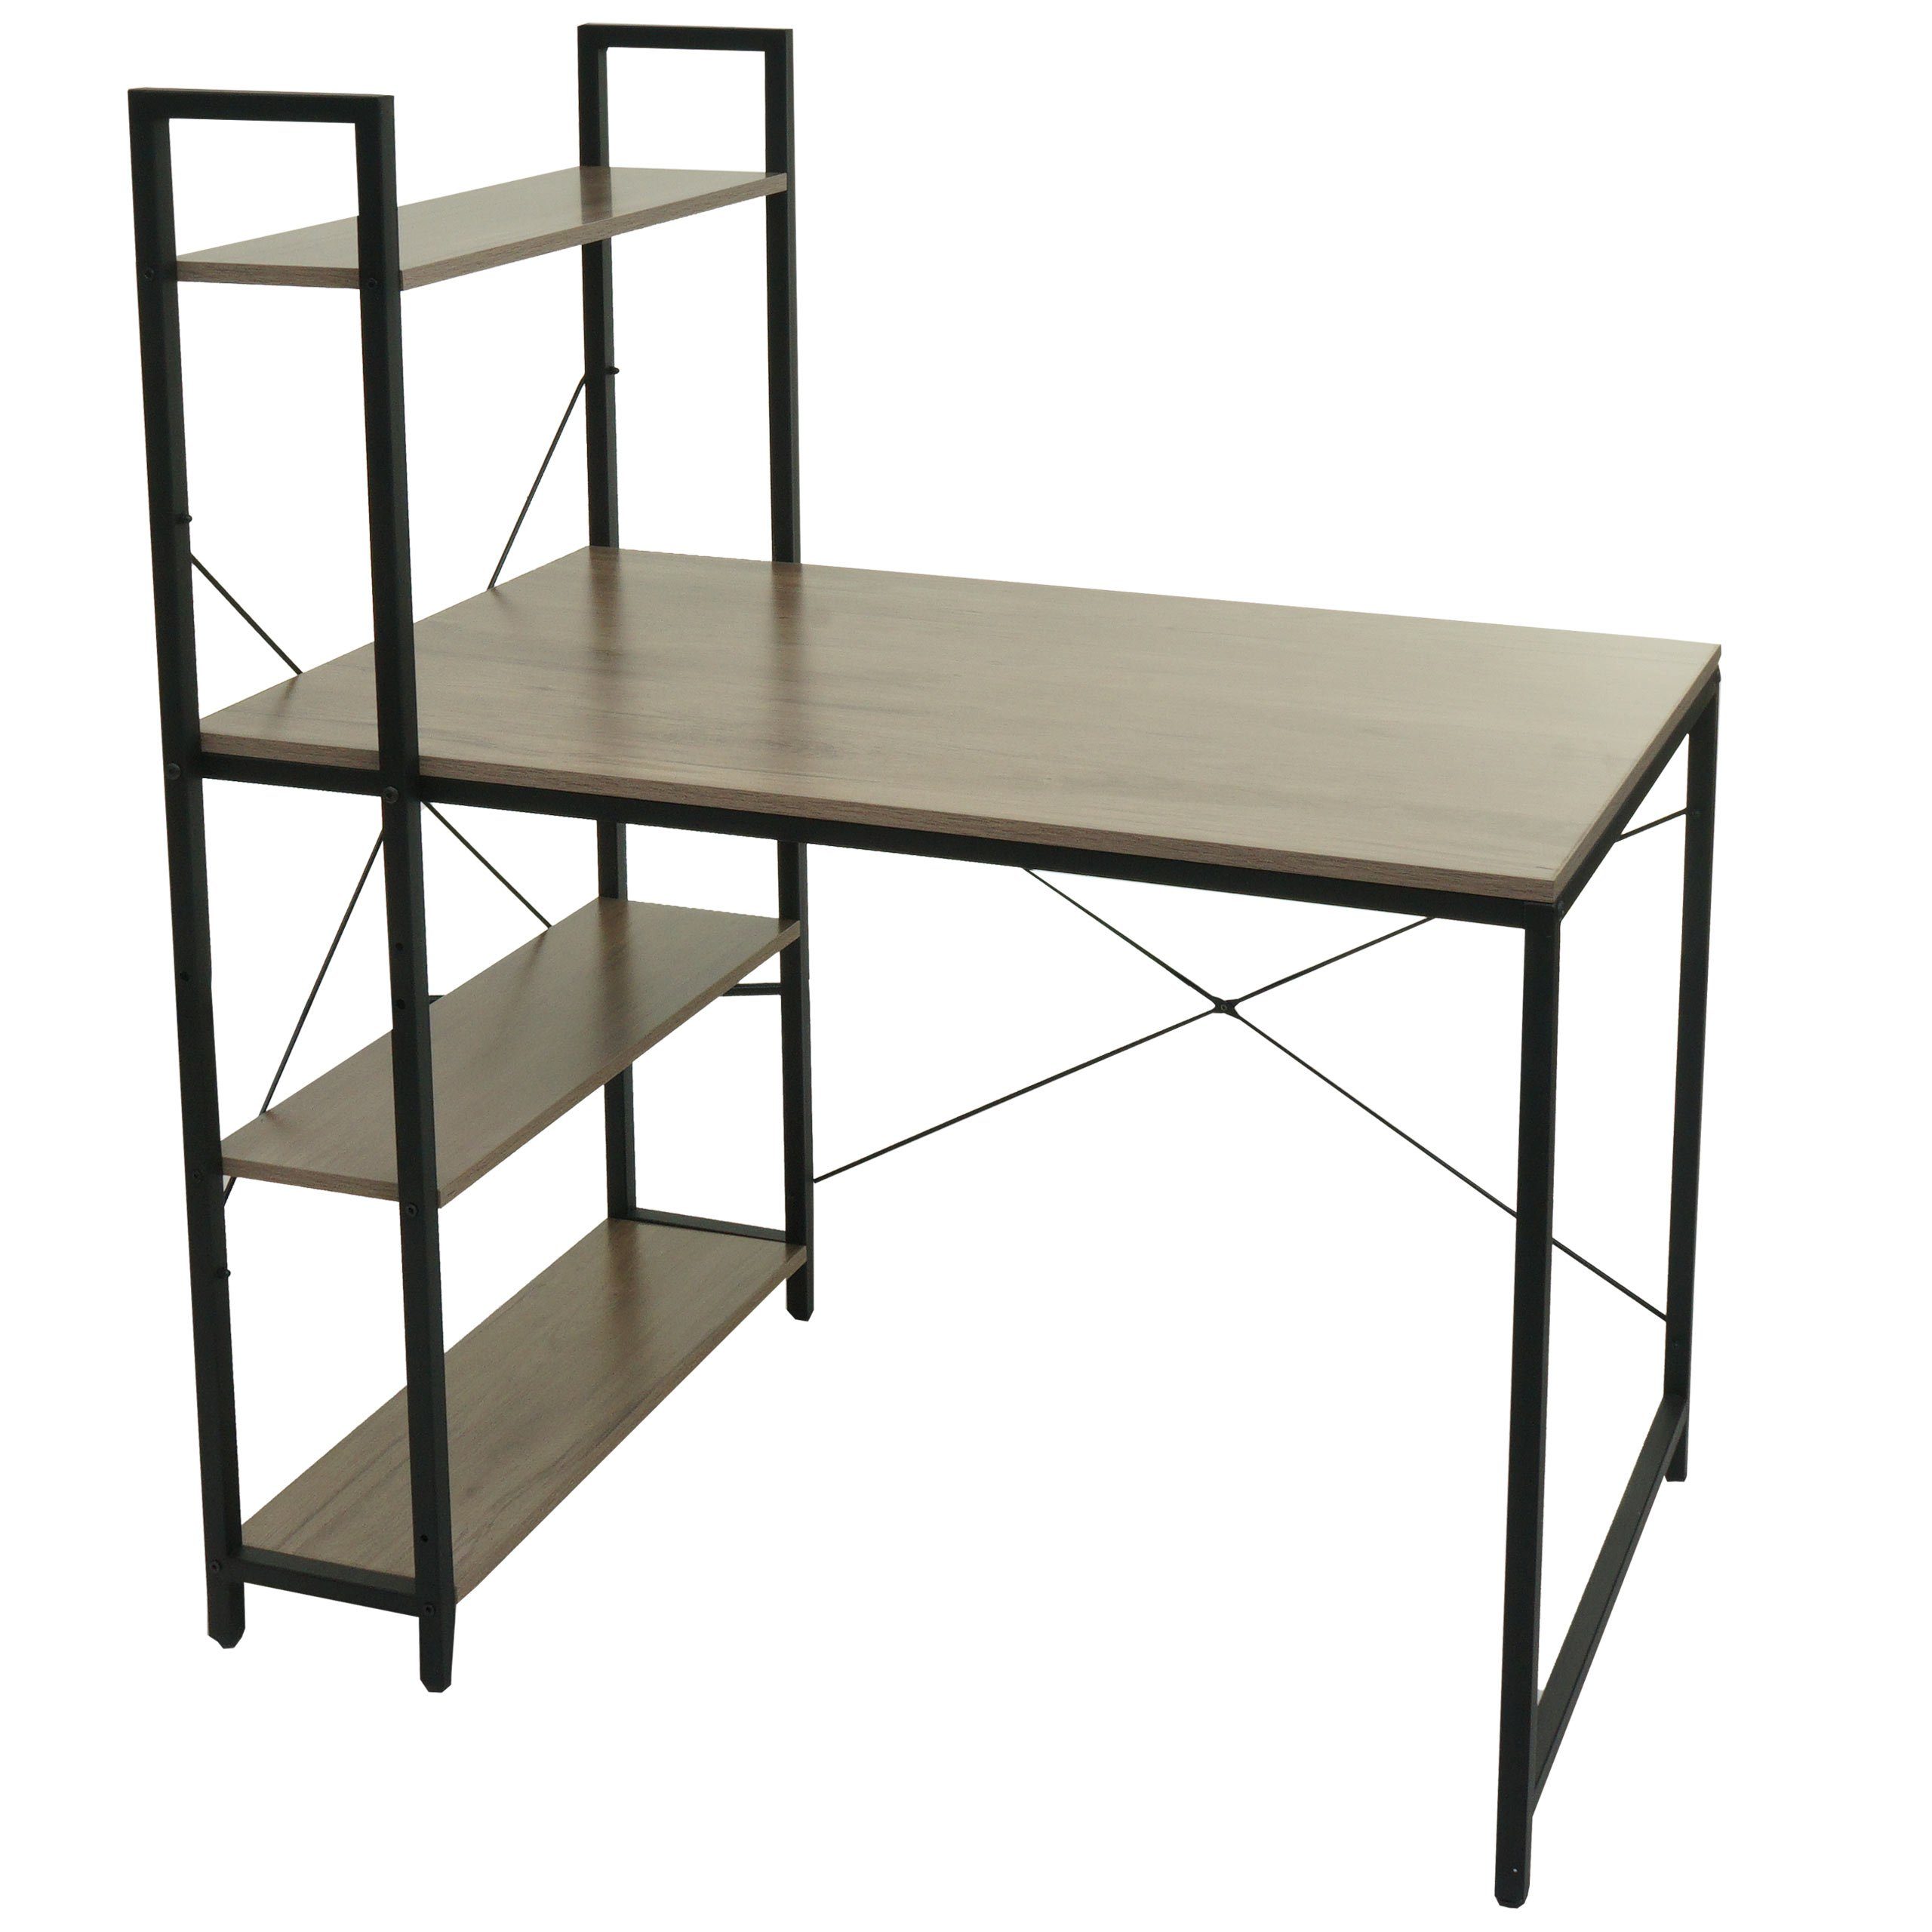 MCW Schreibtisch MCW-K81, Mit 4 Regalböden, Tischplatte mit Struktur grau-braun | grau-braun